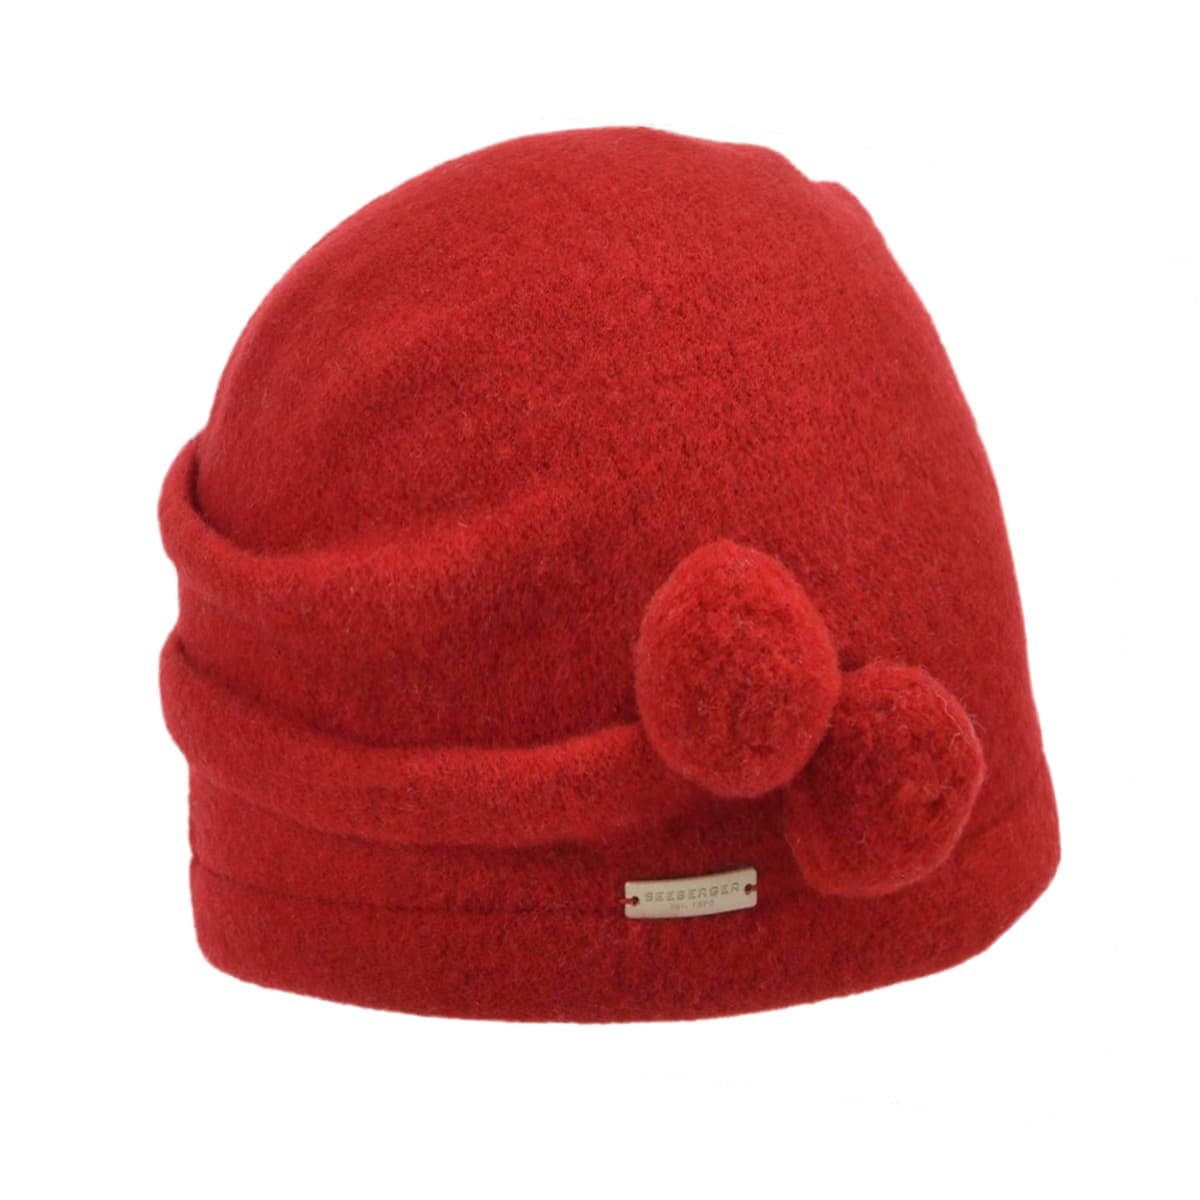 Outdoor Hats Fleece Hat Accessories Hiking Warmming Military Caps Cap Men  Unisex